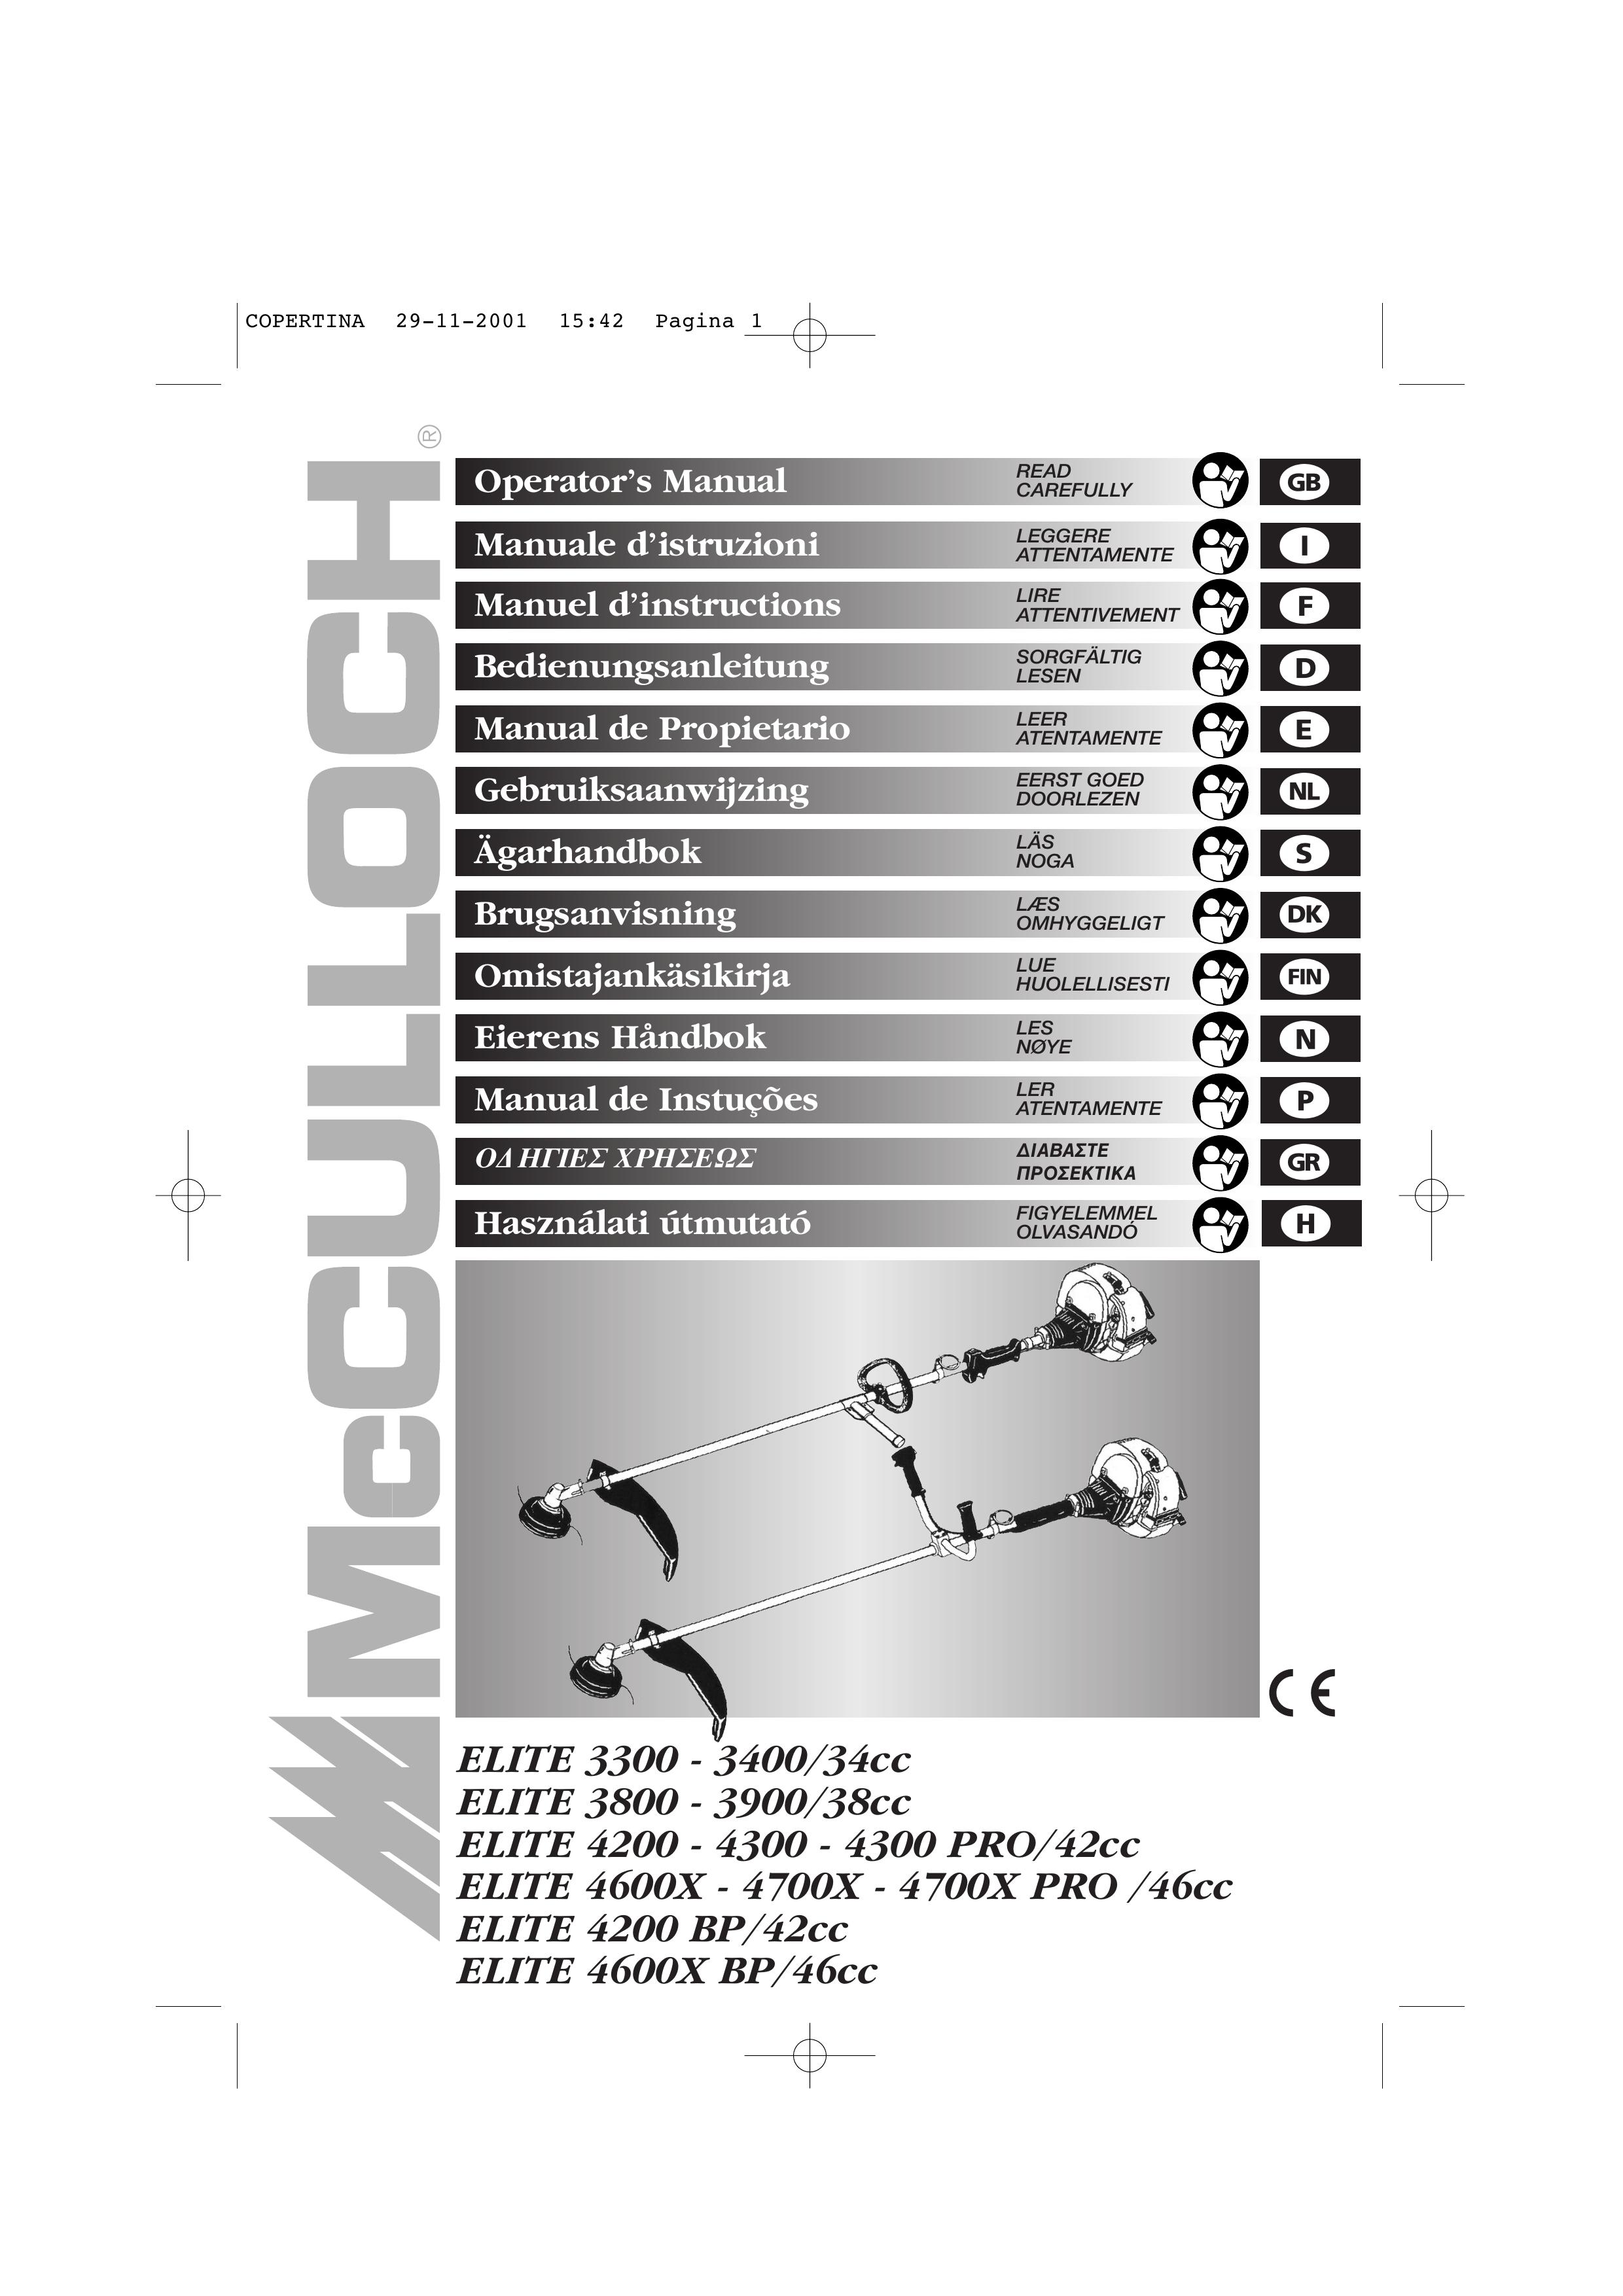 McCulloch 3900/38cc Brush Cutter User Manual